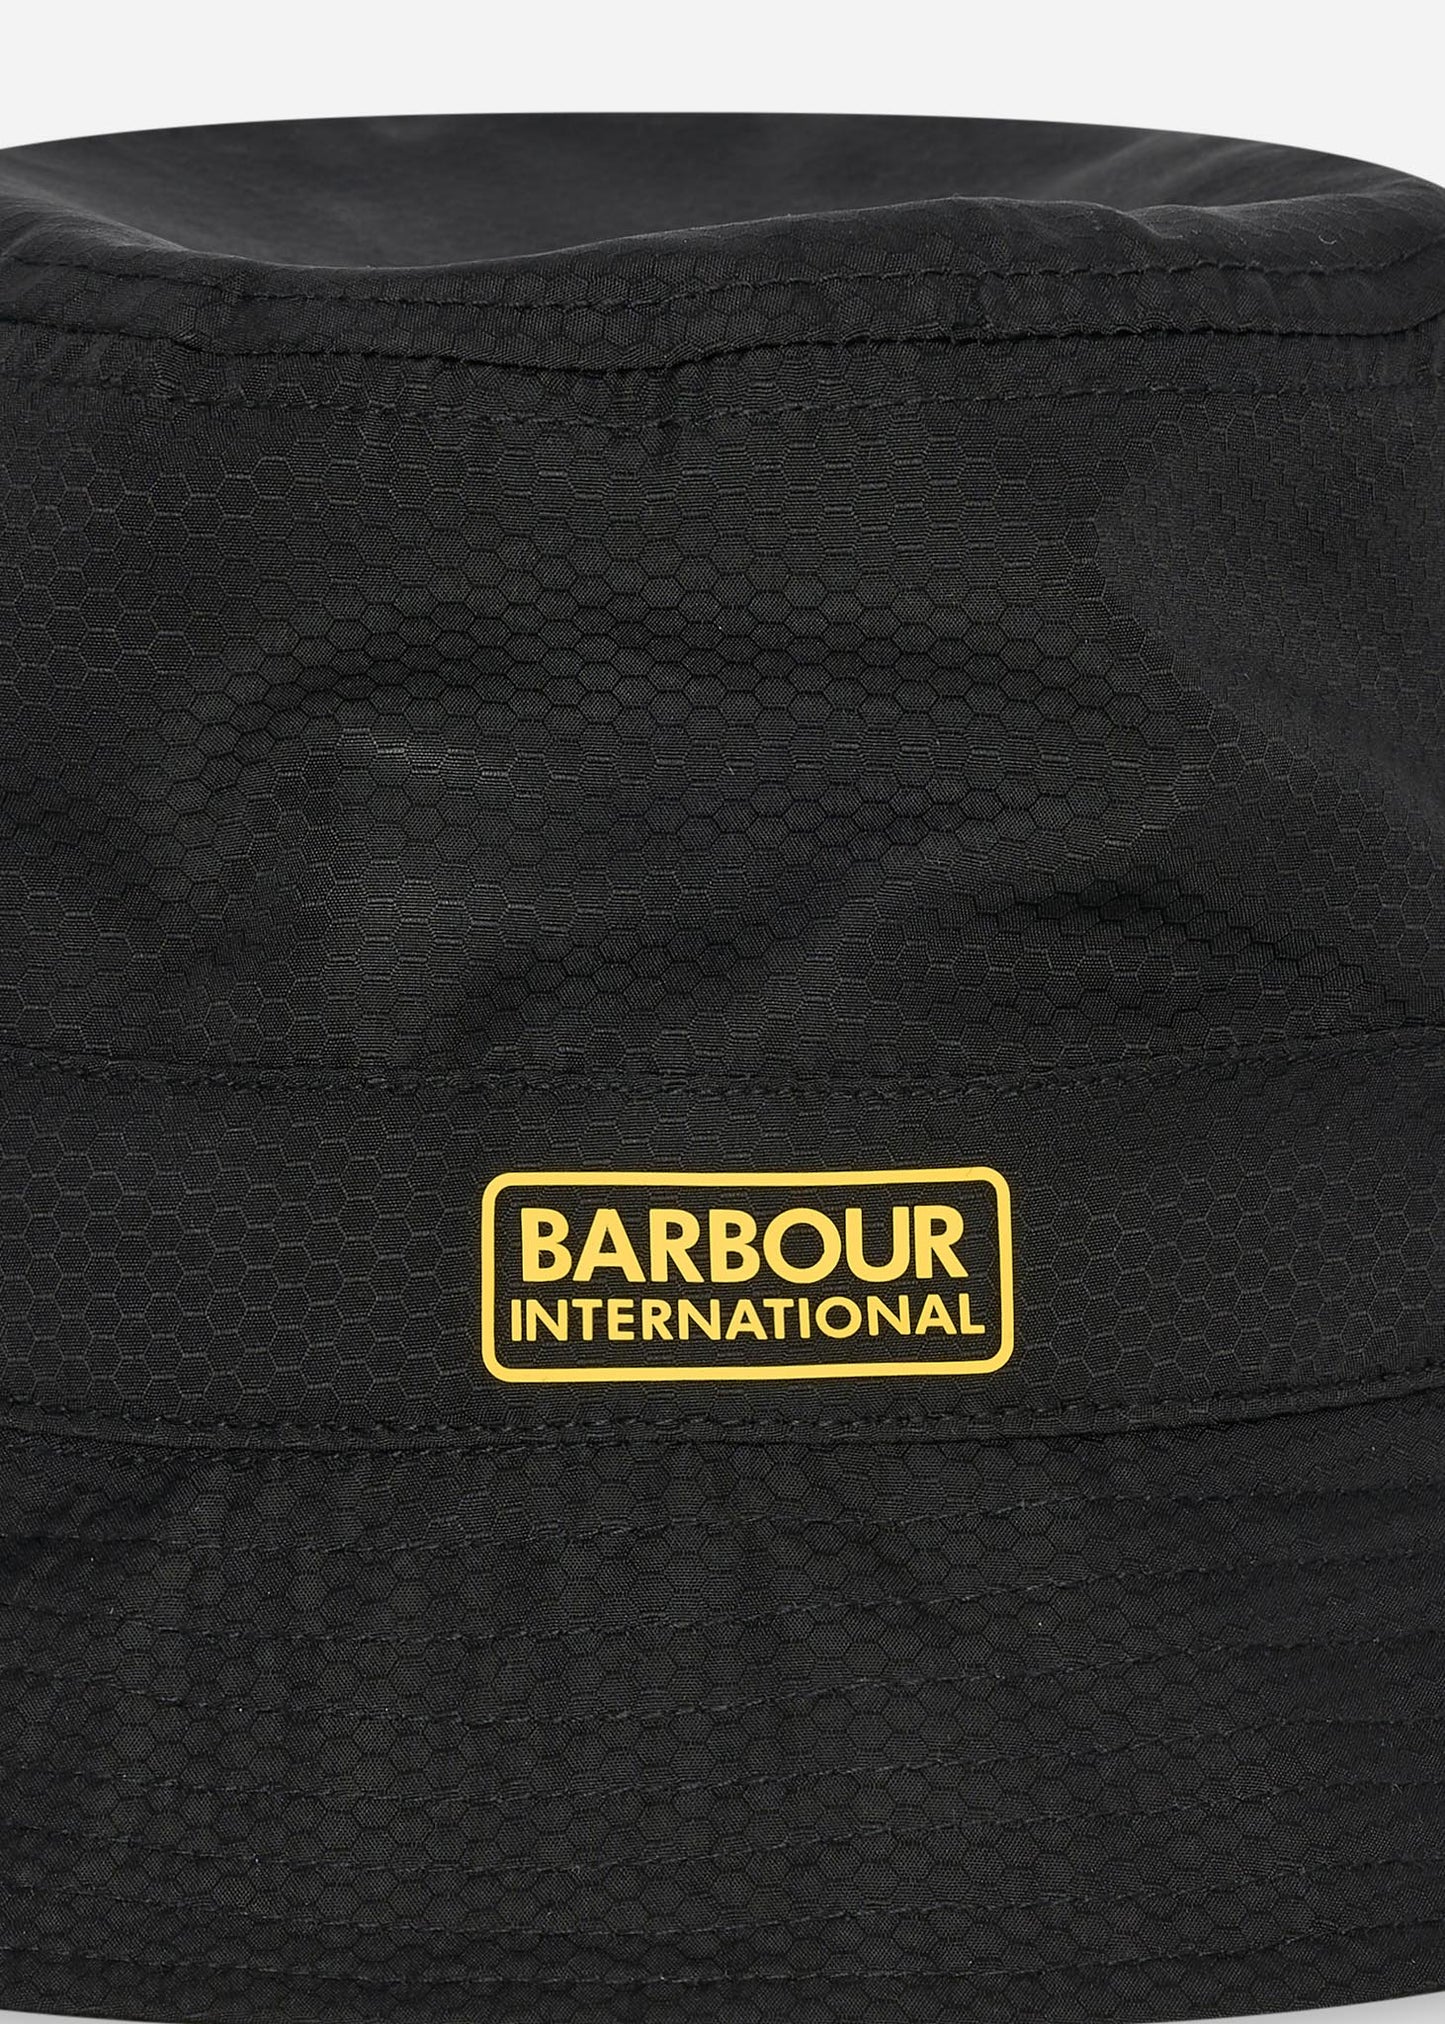 Impeller sports hat - black - Barbour International